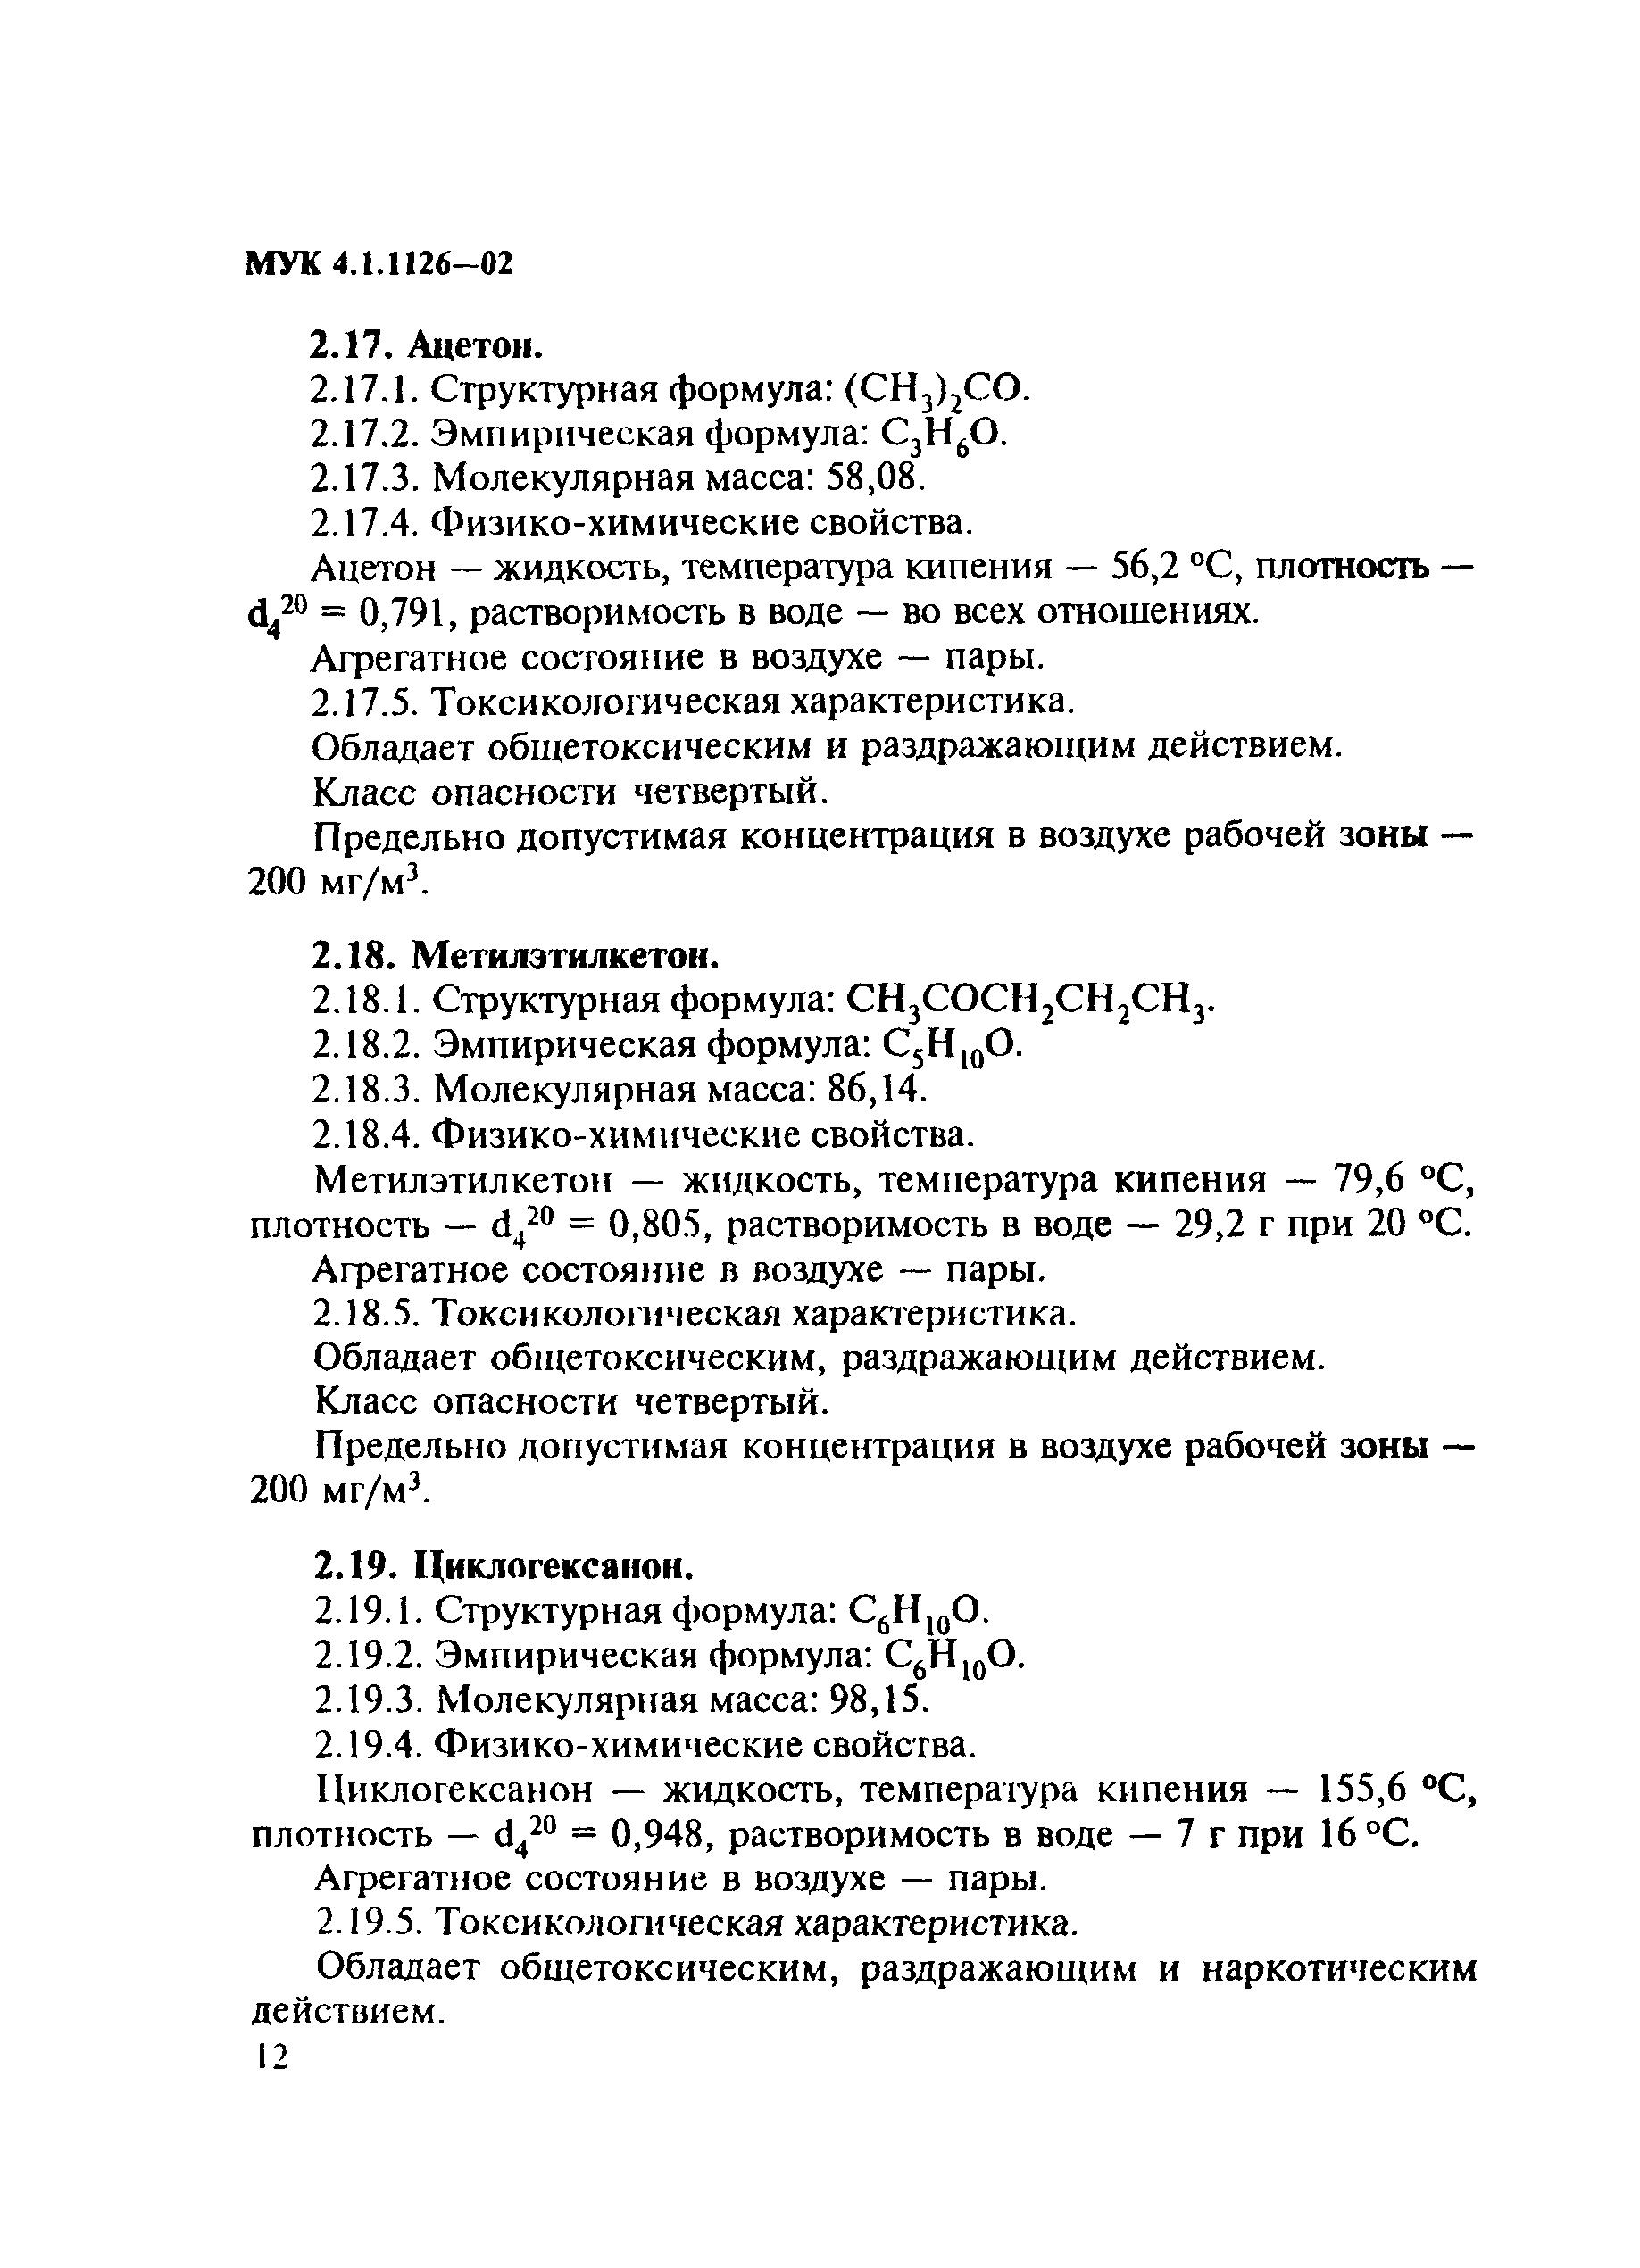 МУК 4.1.1126-02